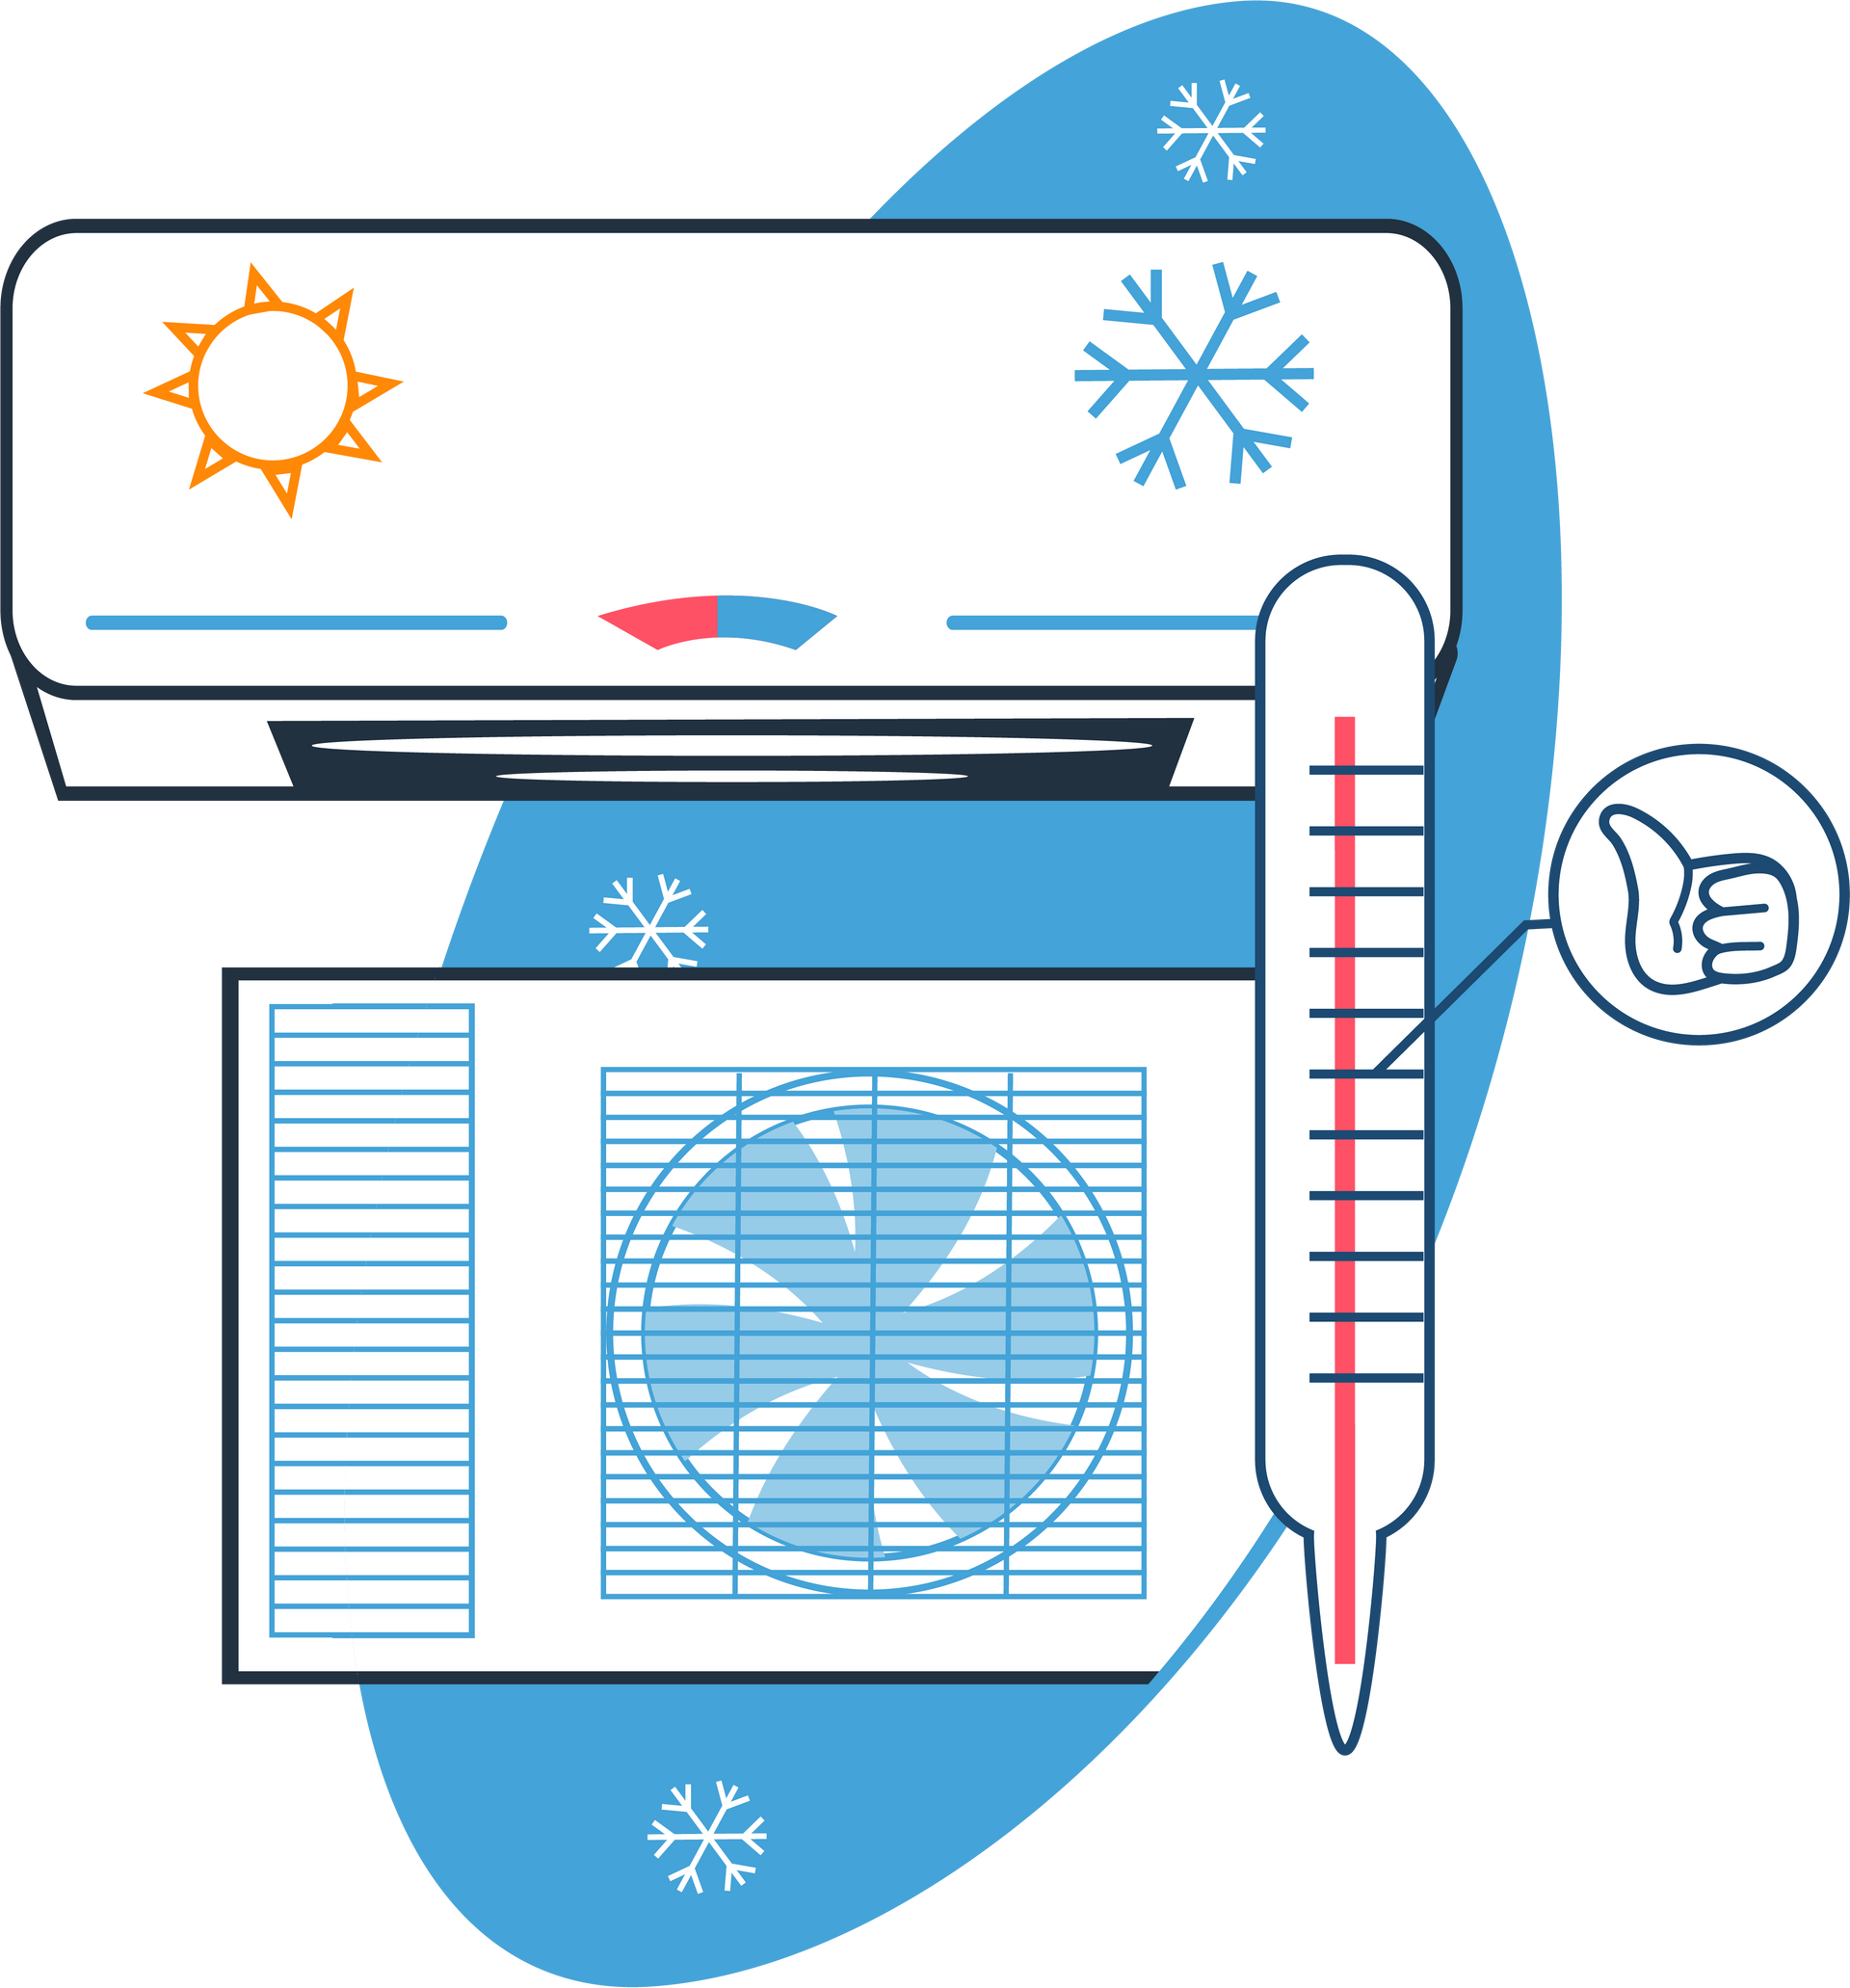 Systèmes de chauffage et climatisation en dessin - Page Pompe à chaleur